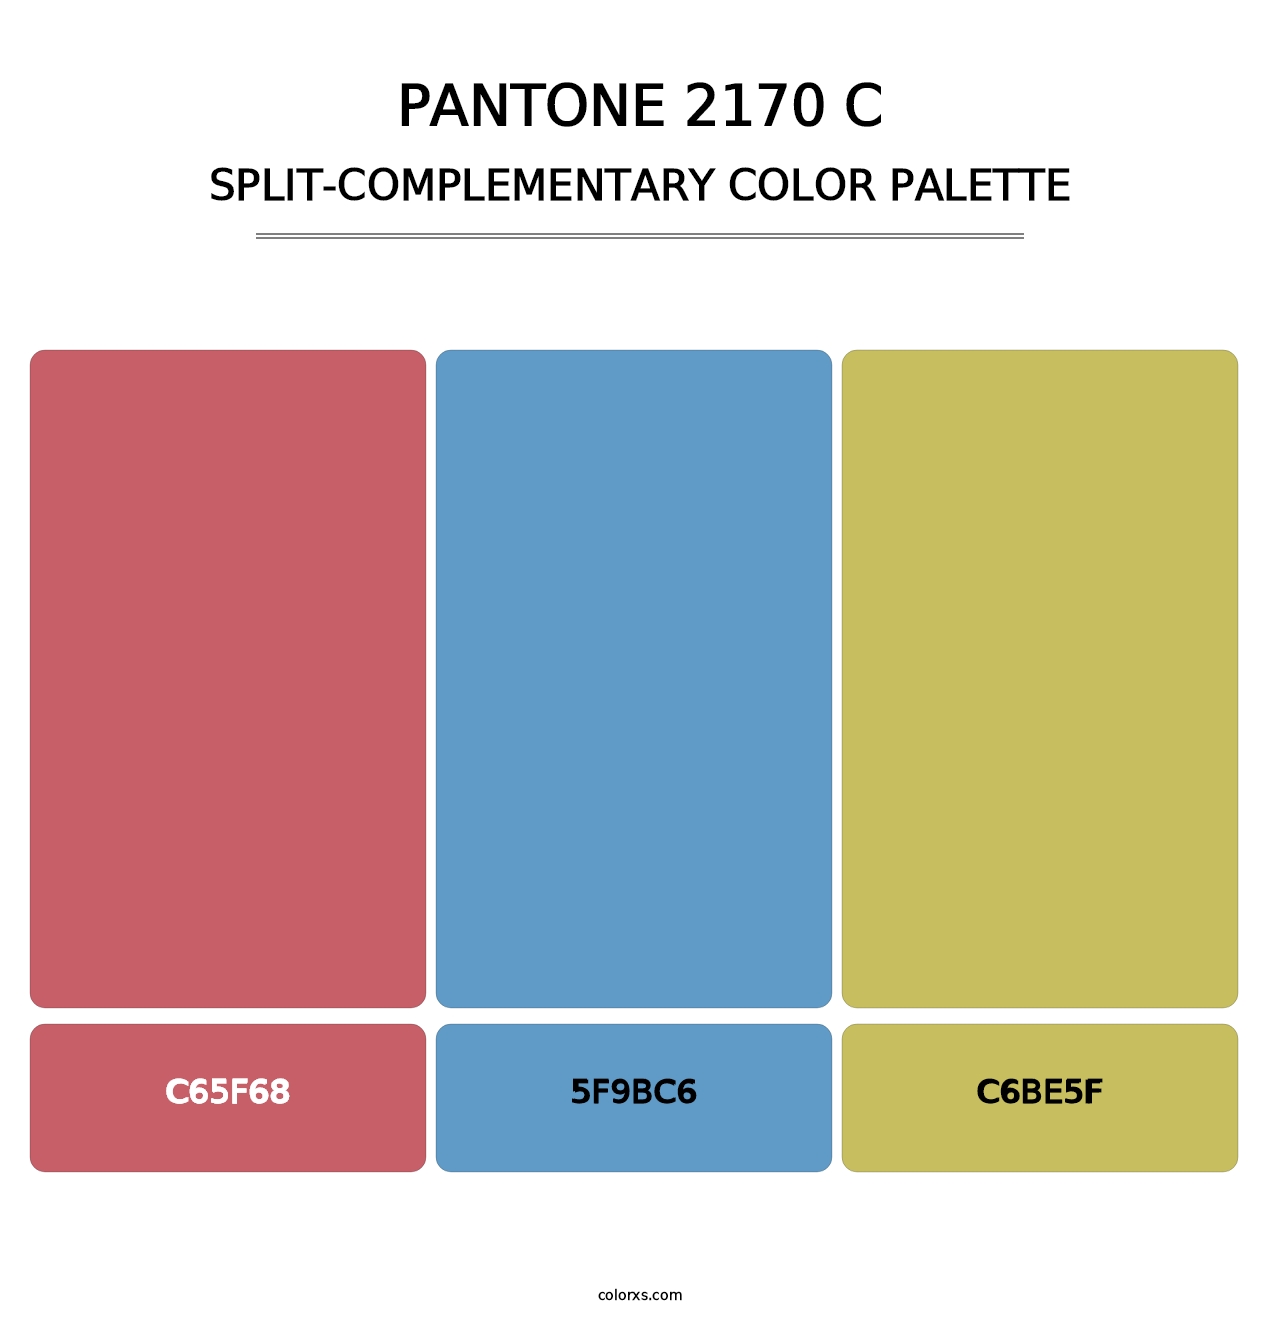 PANTONE 2170 C - Split-Complementary Color Palette